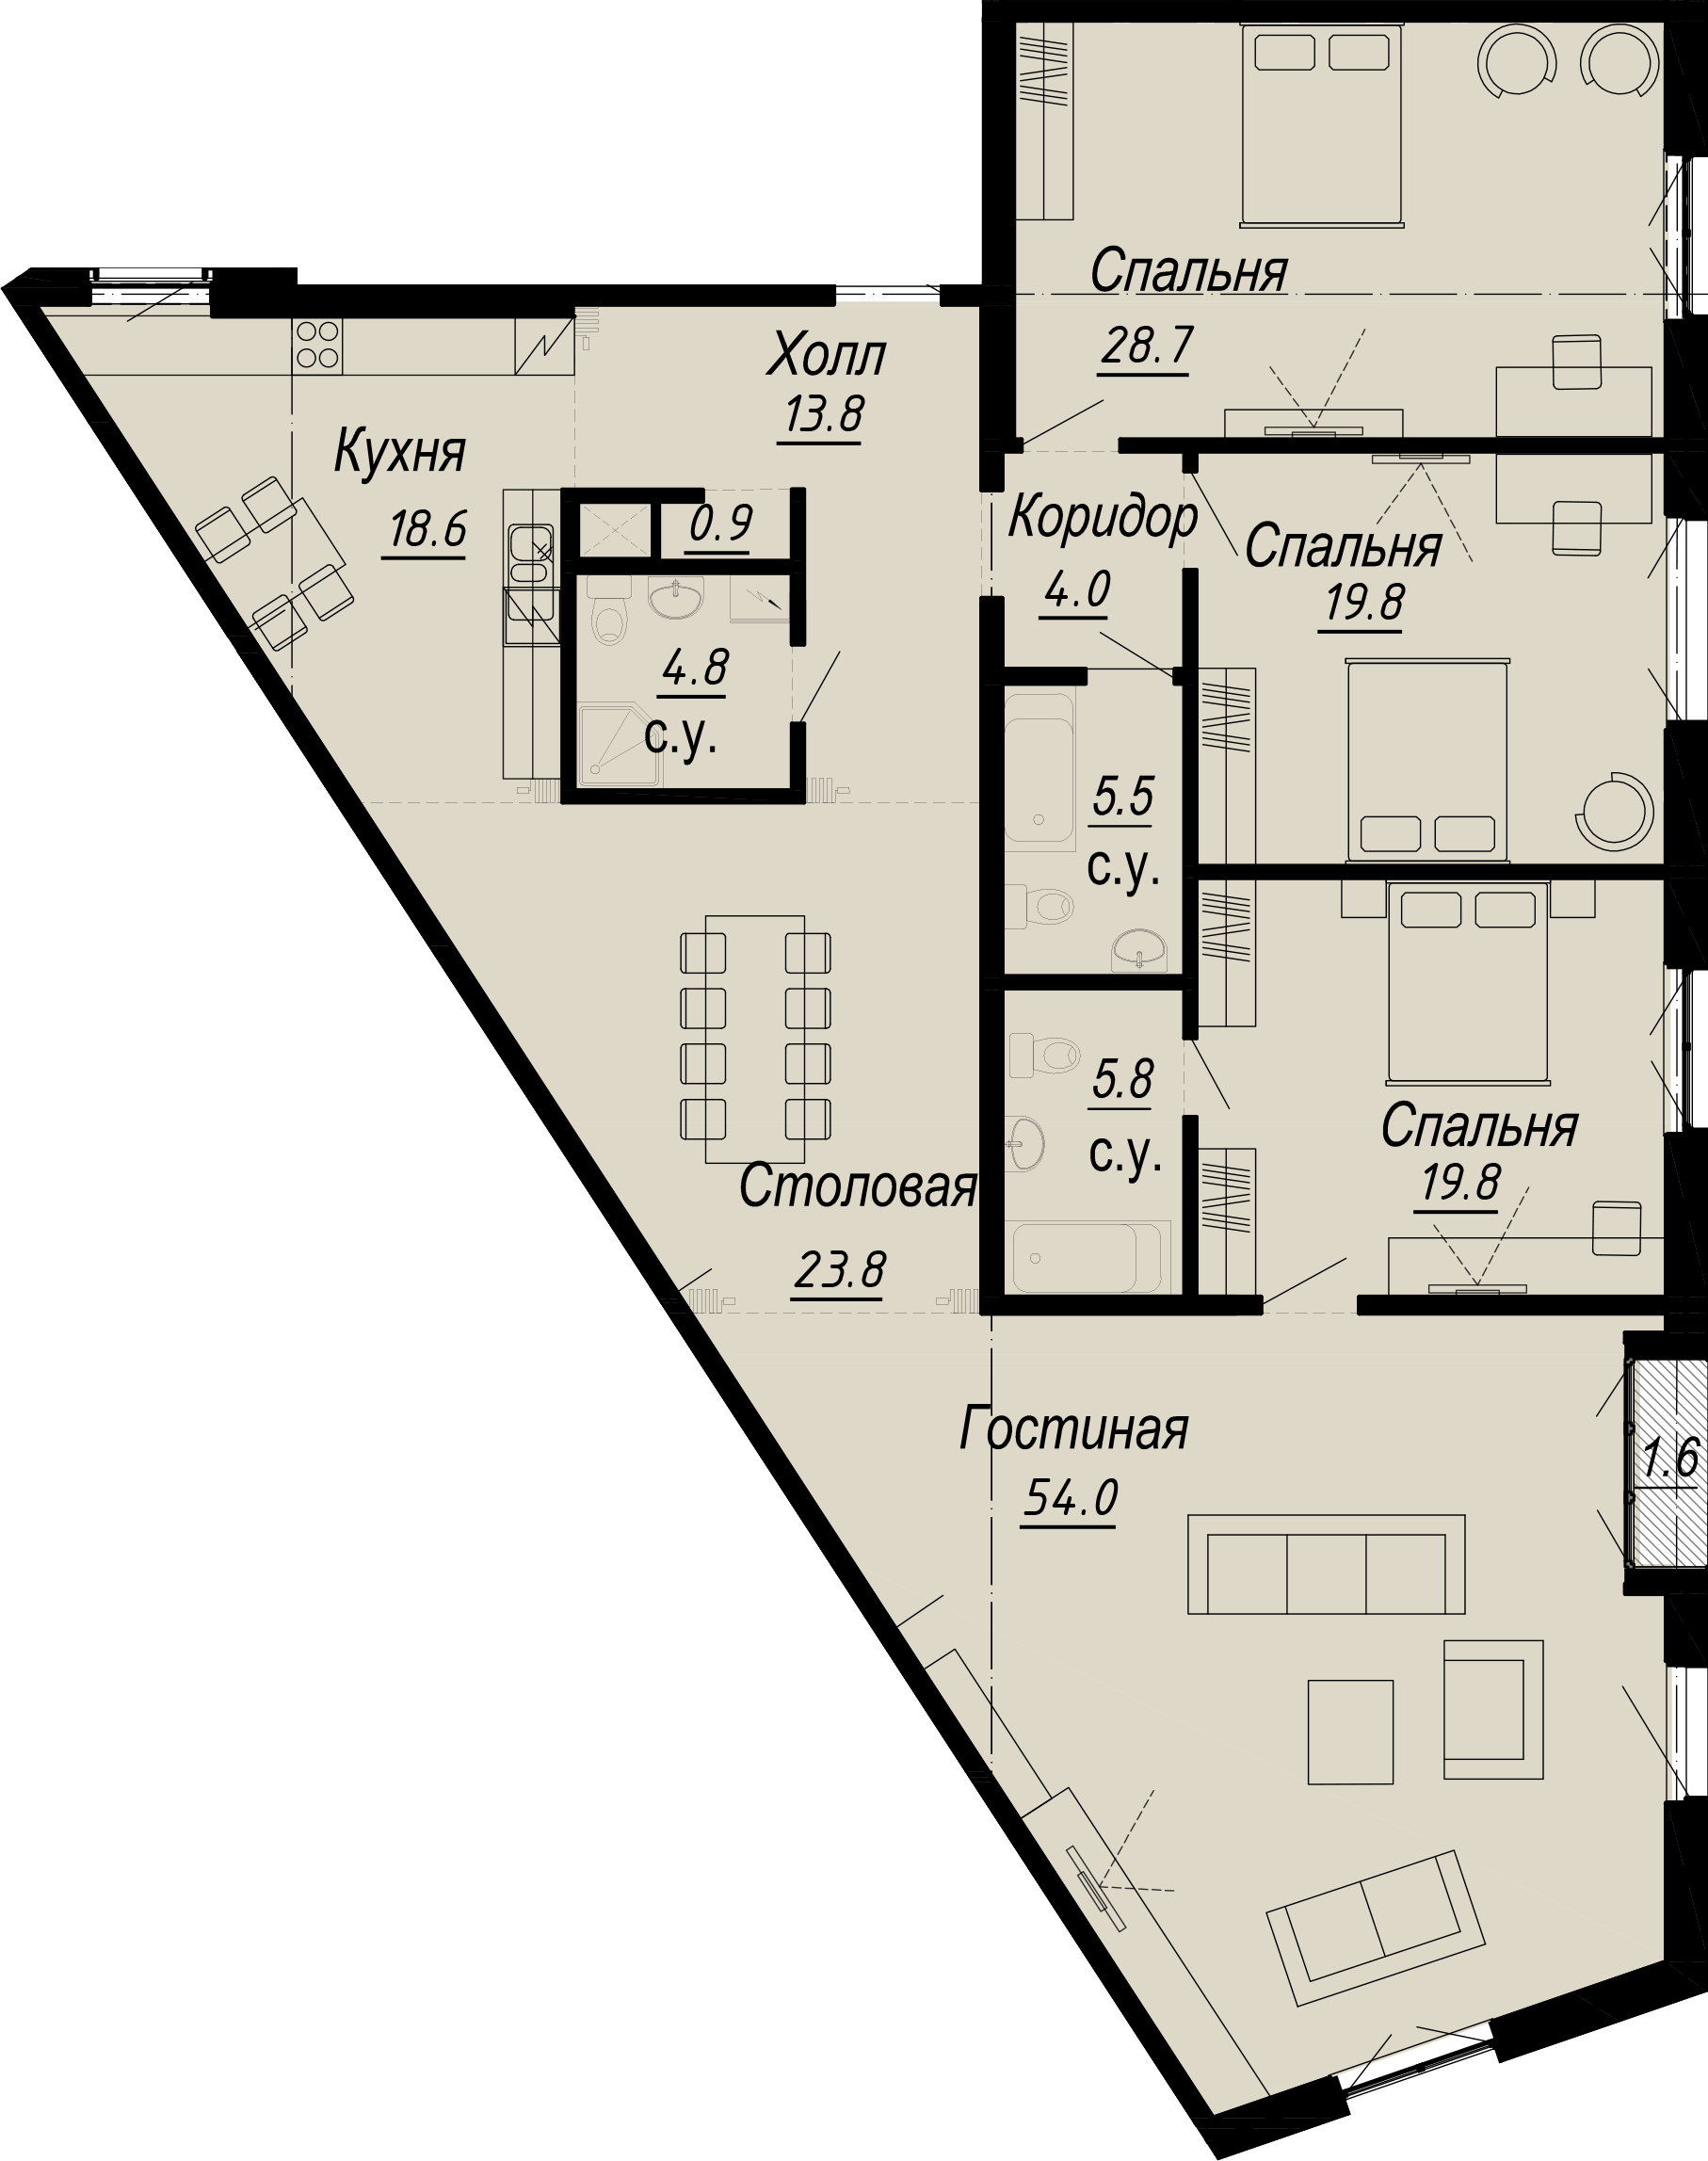 4-комнатная квартира  №8-4 в Meltzer Hall: 204.36 м², этаж 4 - купить в Санкт-Петербурге